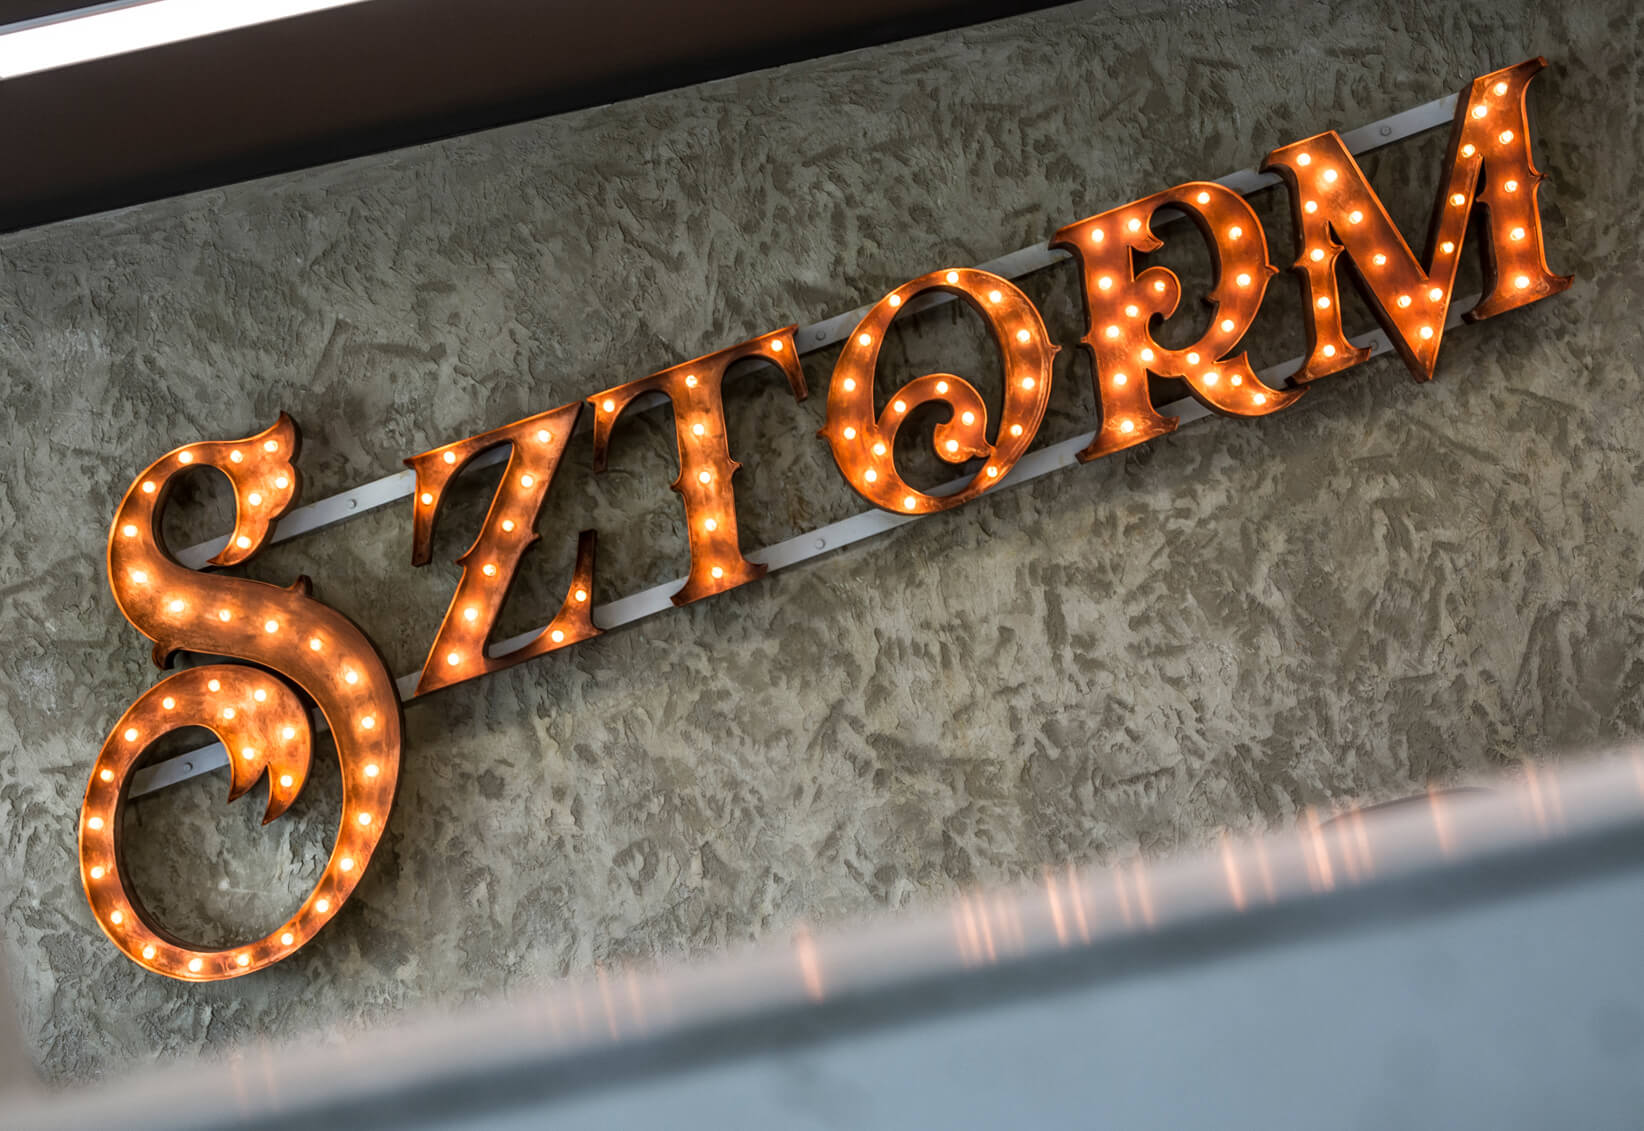 SZTORM - SZTORM - letras con bombillas en un marco colocado sobre hormigón